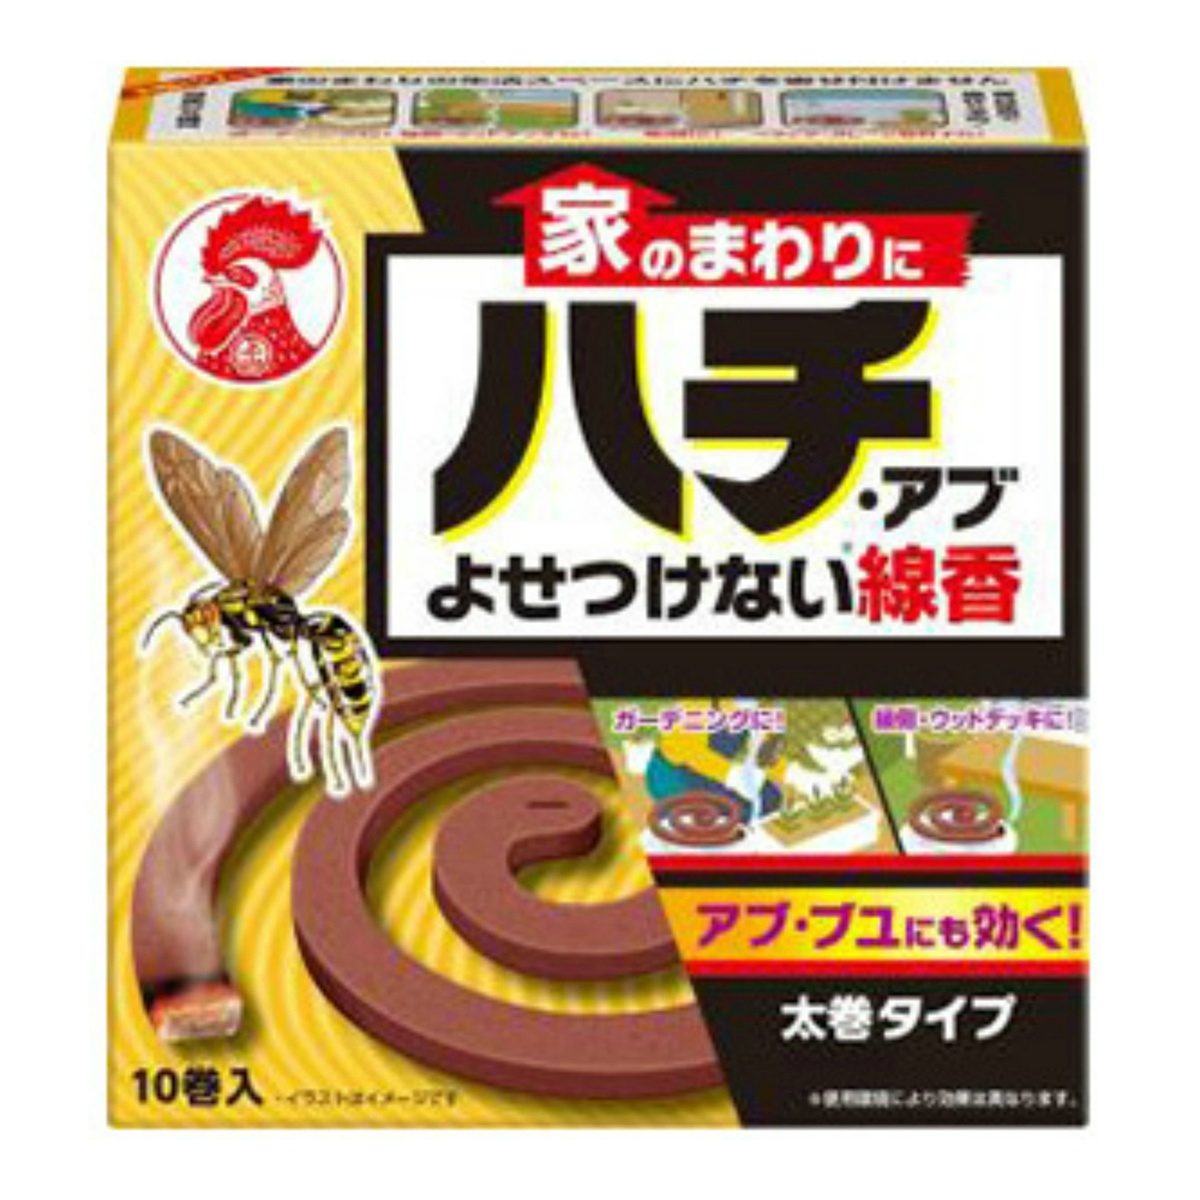 大日本除虫菊 金鳥 家のまわりにハチ アブ 線香 よせつけない 優先配送 【高品質】 10巻入